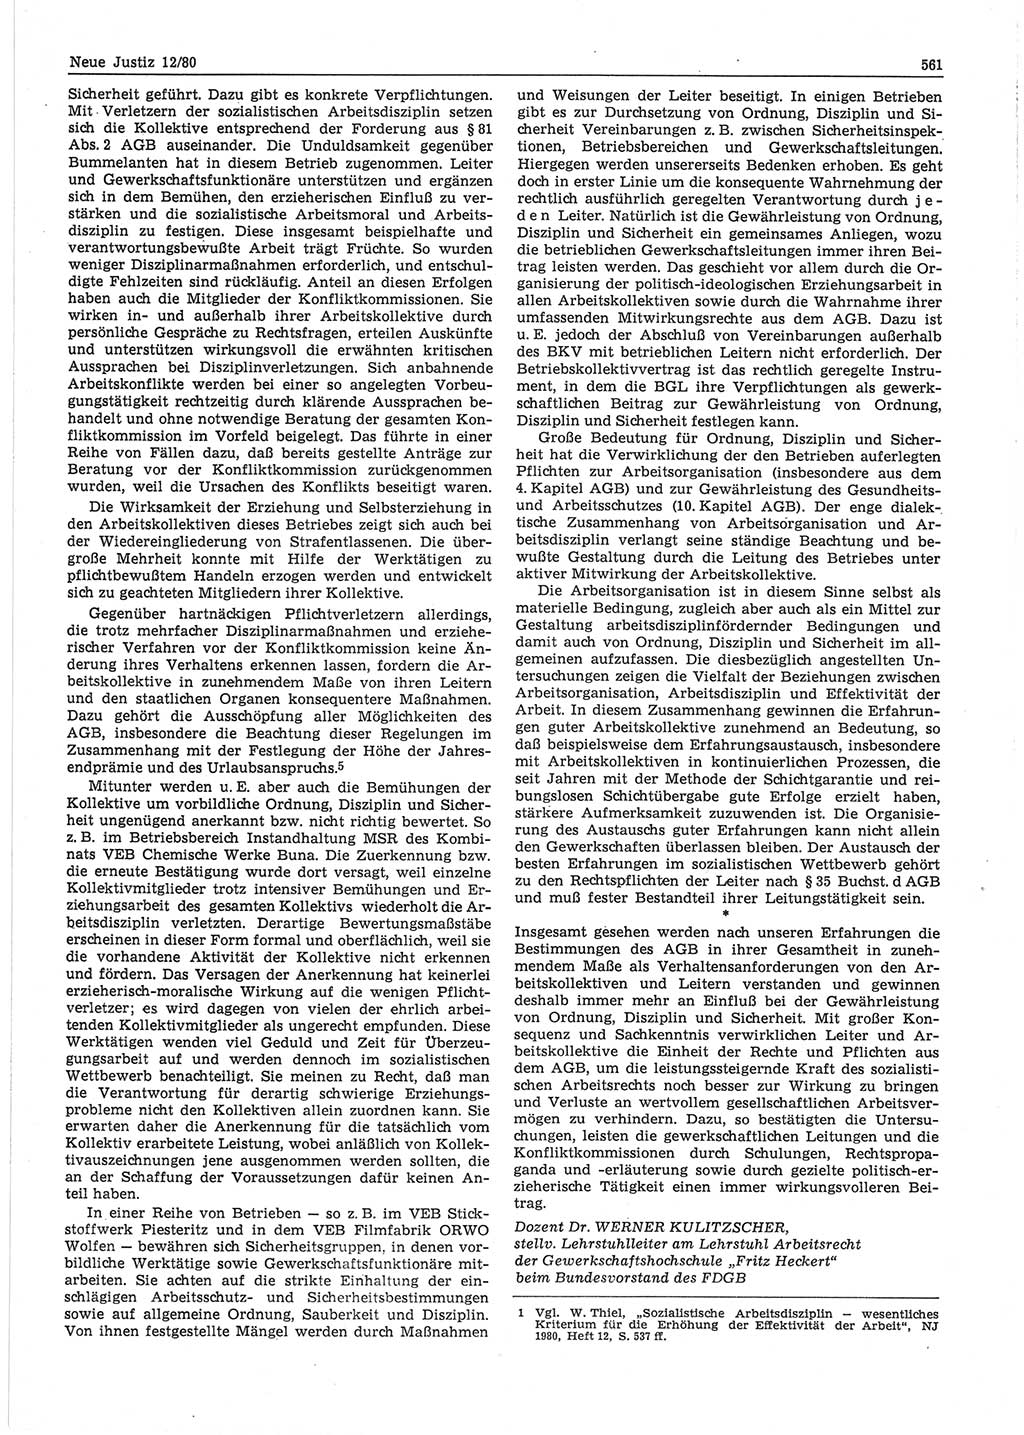 Neue Justiz (NJ), Zeitschrift für sozialistisches Recht und Gesetzlichkeit [Deutsche Demokratische Republik (DDR)], 34. Jahrgang 1980, Seite 561 (NJ DDR 1980, S. 561)